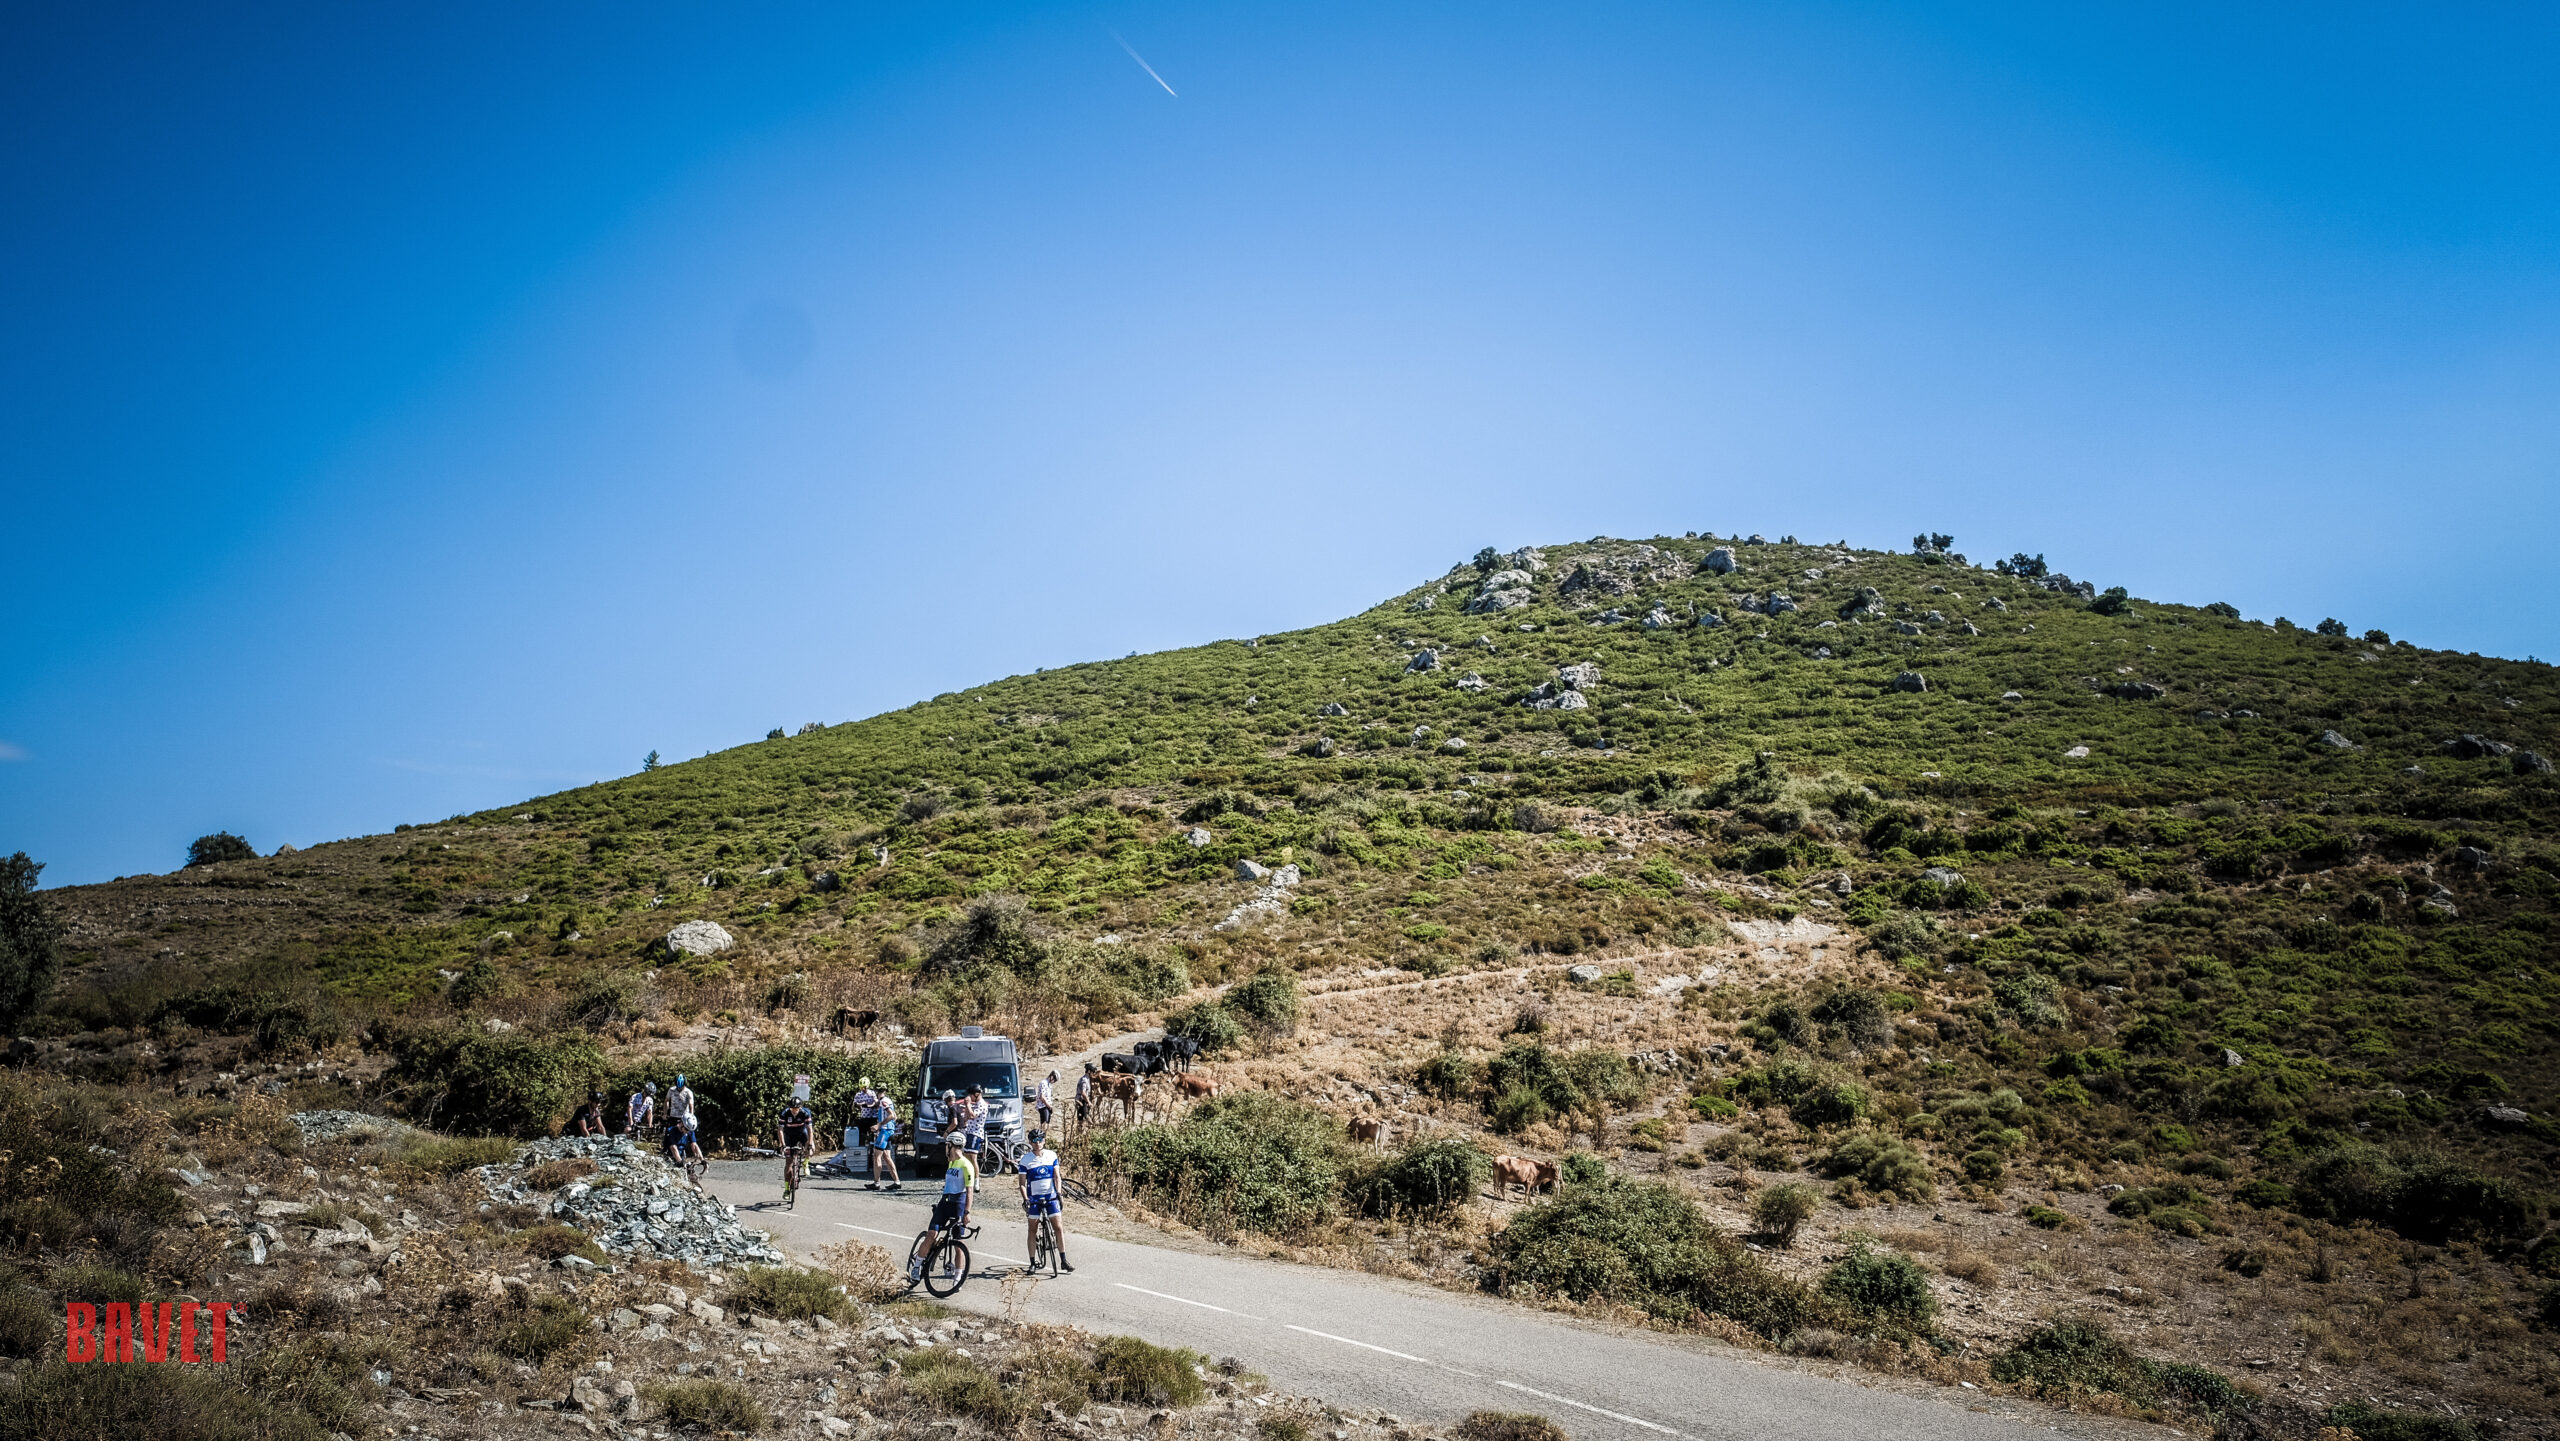 Dag 2 - Met de koersfiets dwars door Corsica